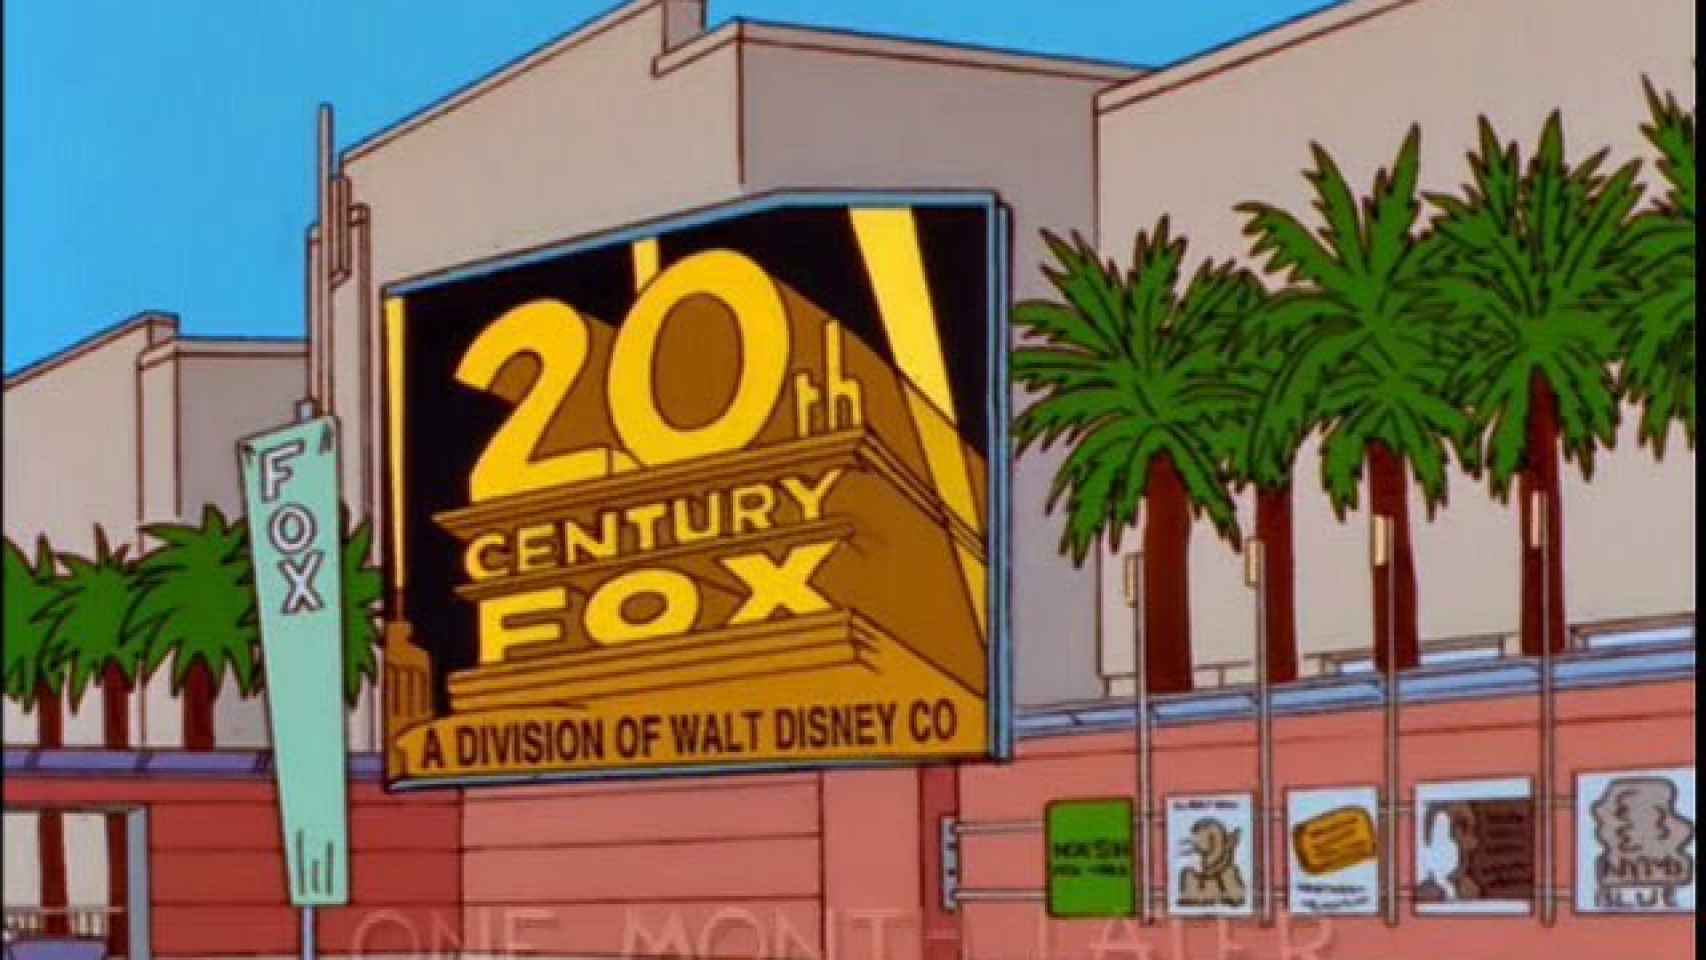 Los Simpson también predijeron la compra de Disney hace 20 años